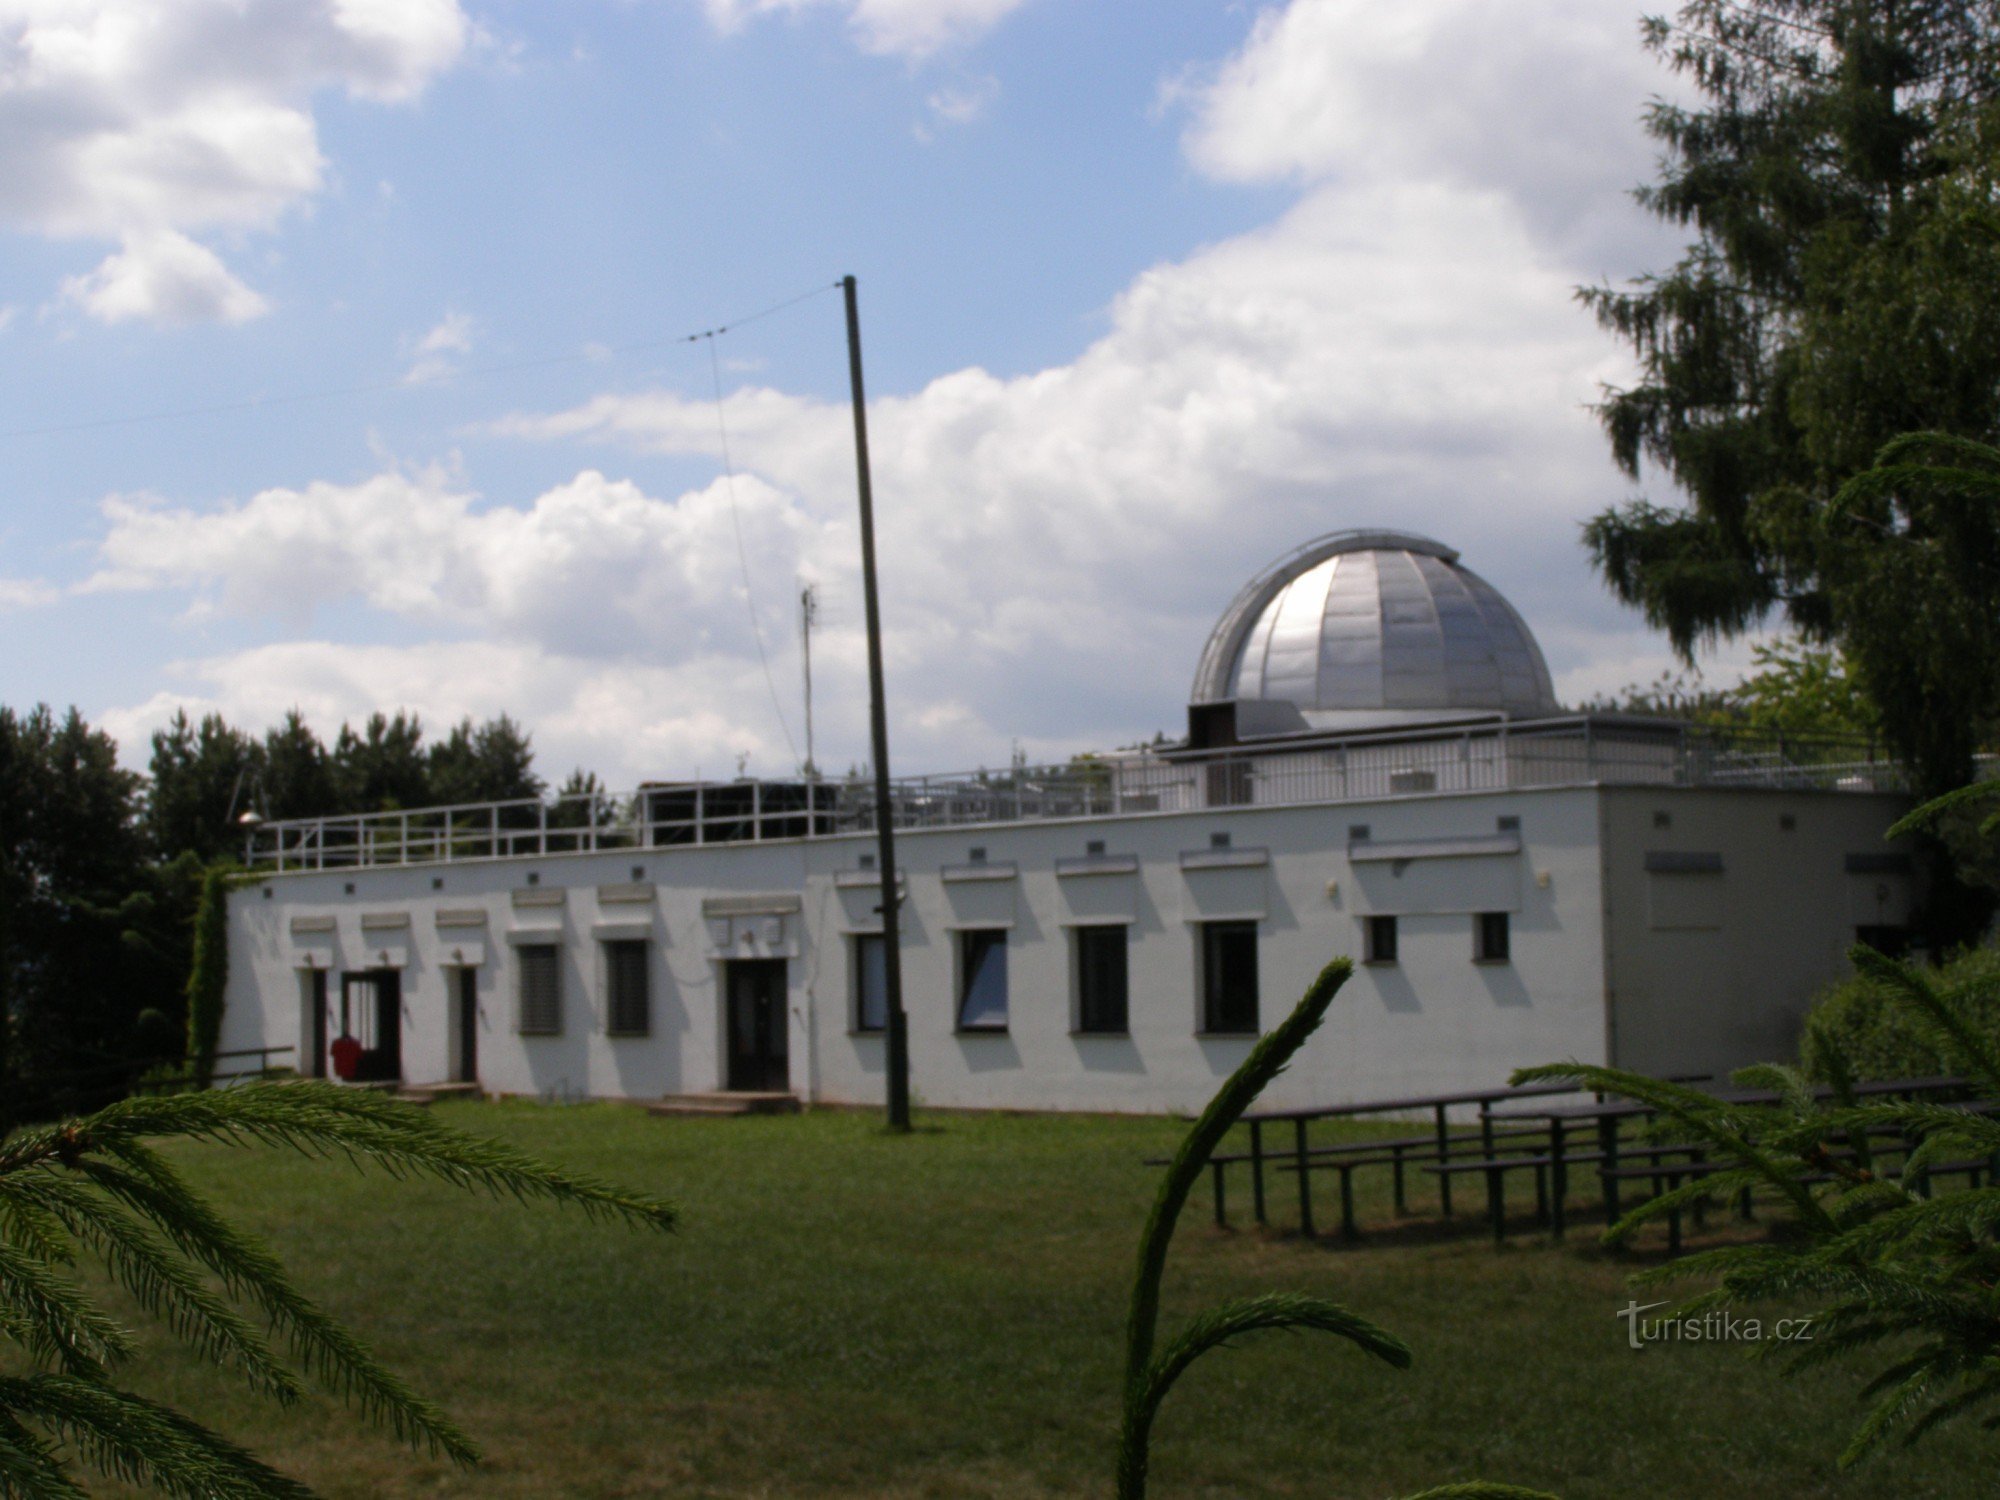 Úpice - Úpice observatorium